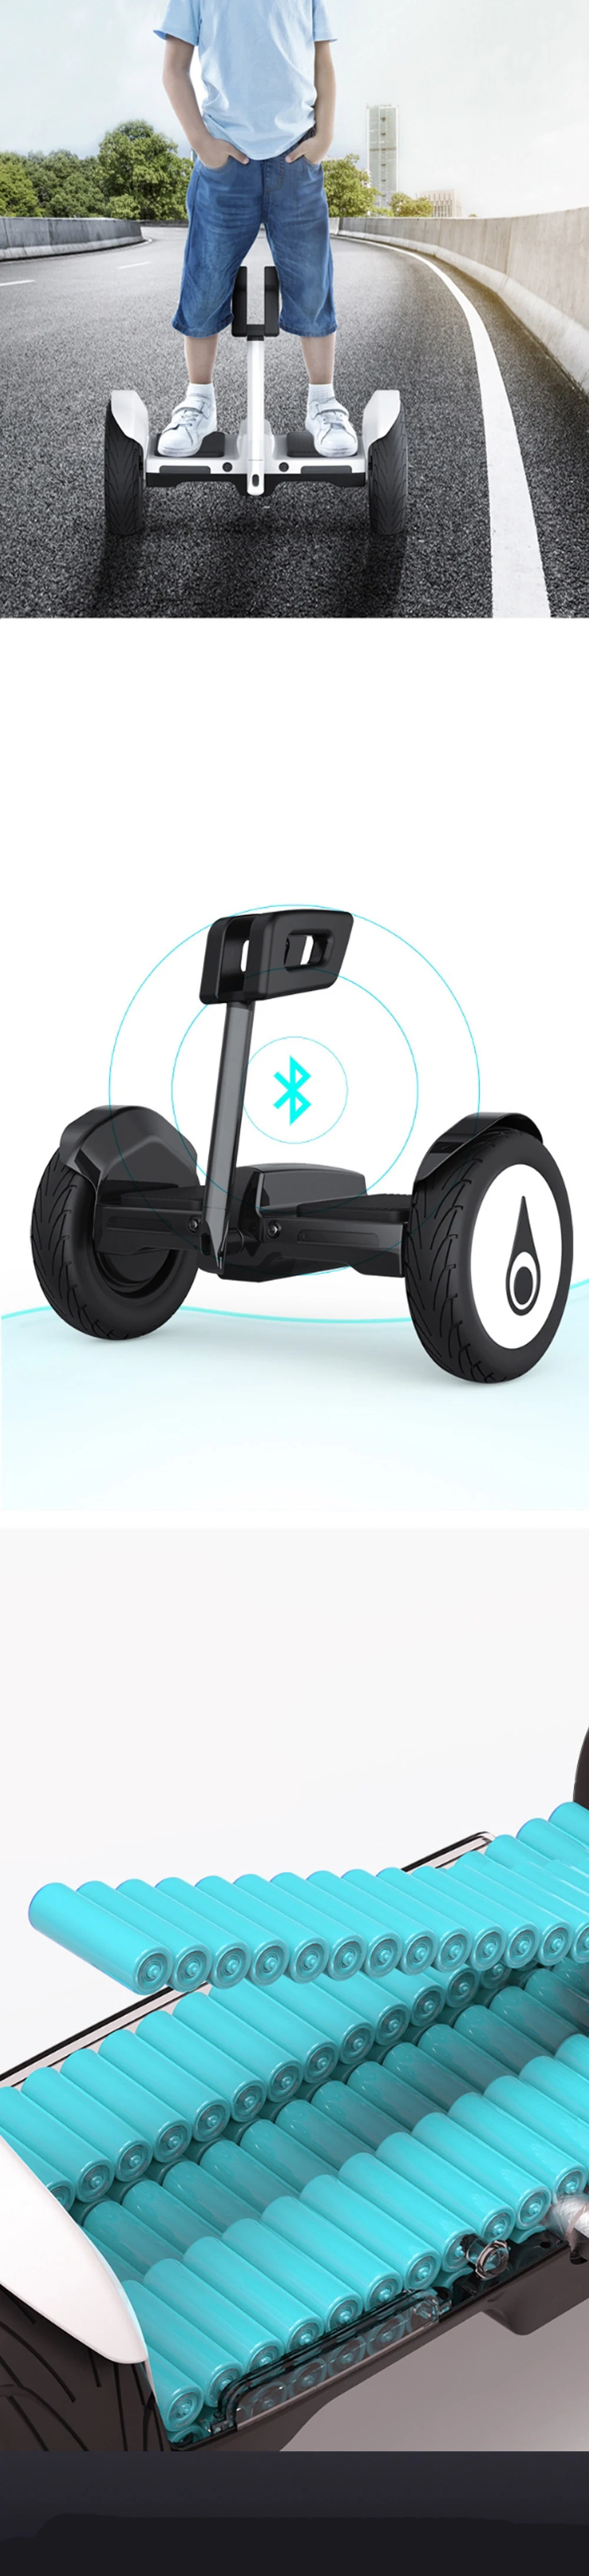 Новейшая модель; ХОВЕРБОРДА 10 дюймов электрический скутер вездеходный два колеса самостоятельно от производителя onlywheel в Китае(стандарты скутер Ховерборд Электрический скейтборд S9